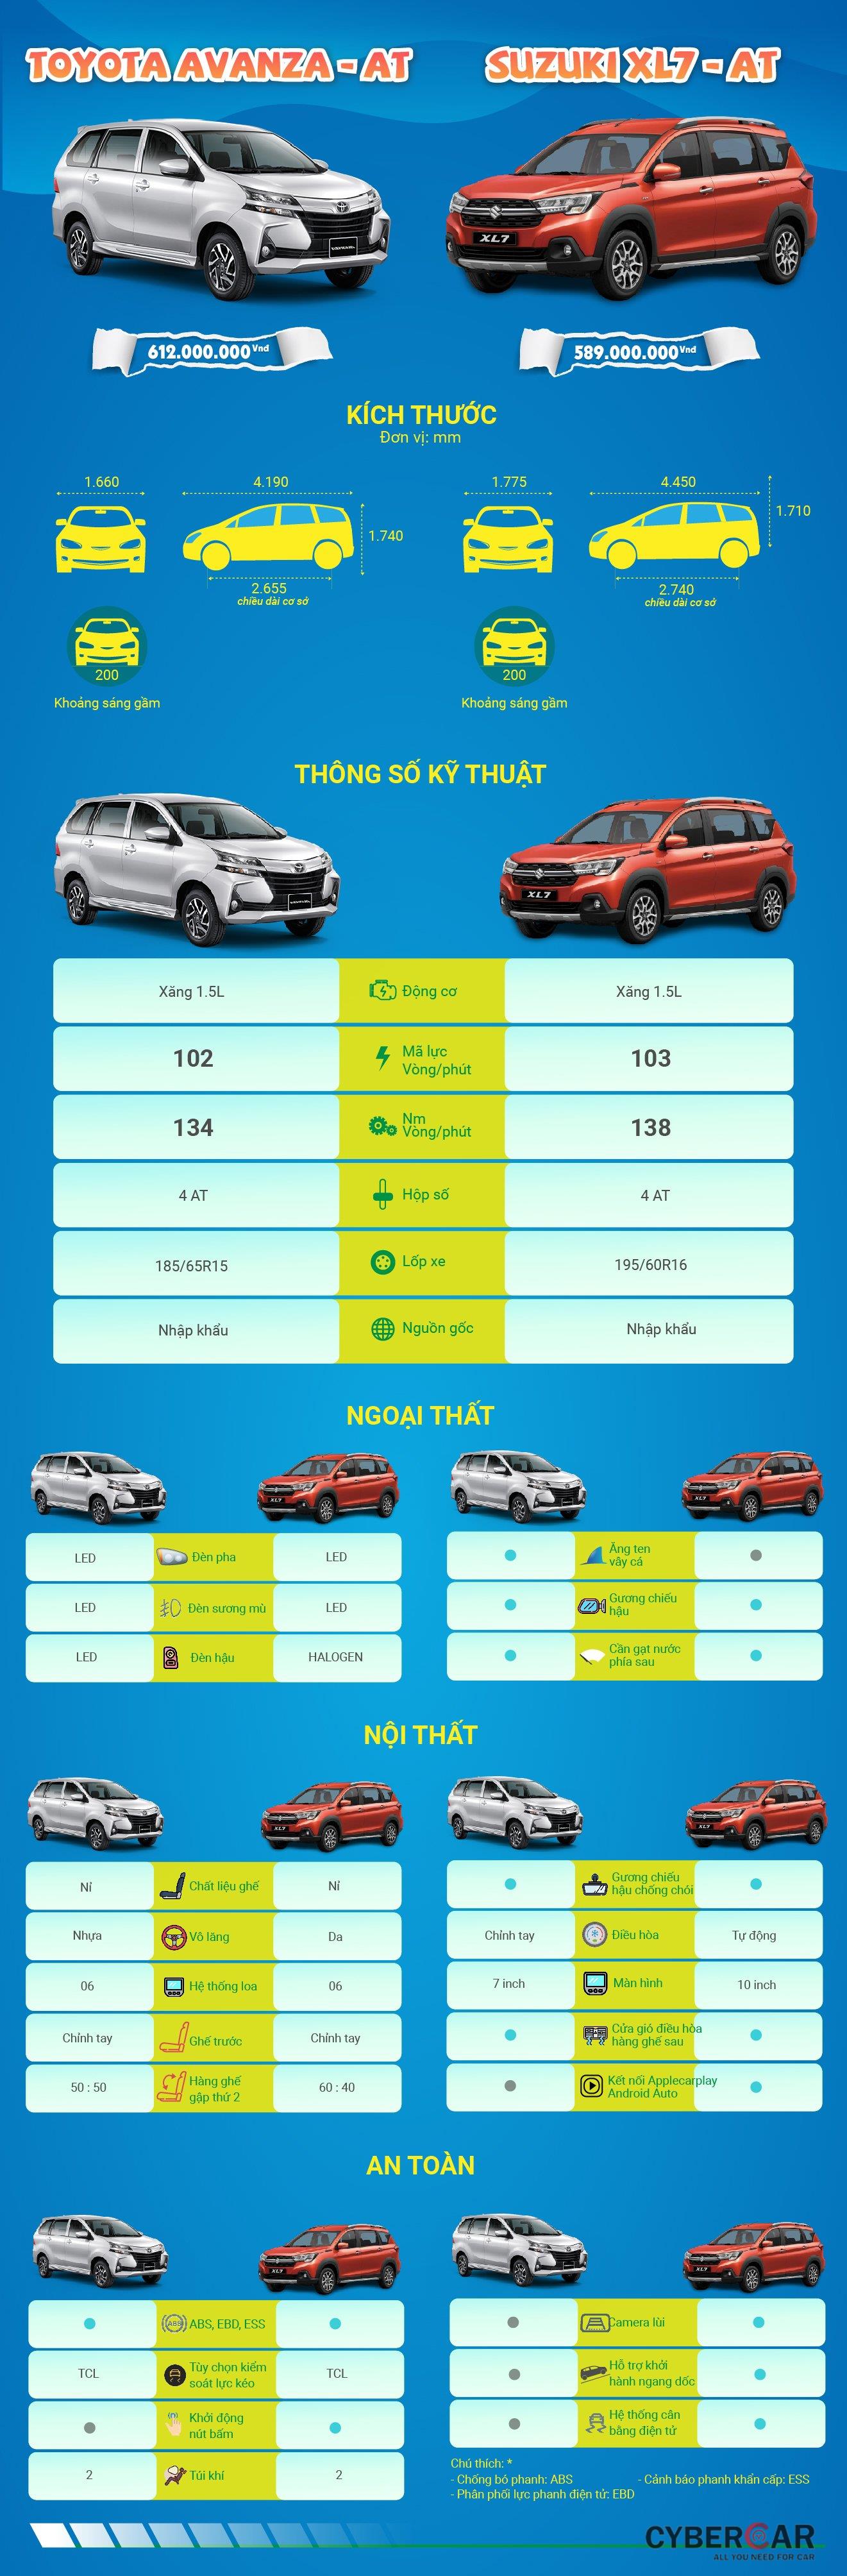 [Infographic] So sánh trang bị Suzuki XL7 và Toyota Avanza 2020.